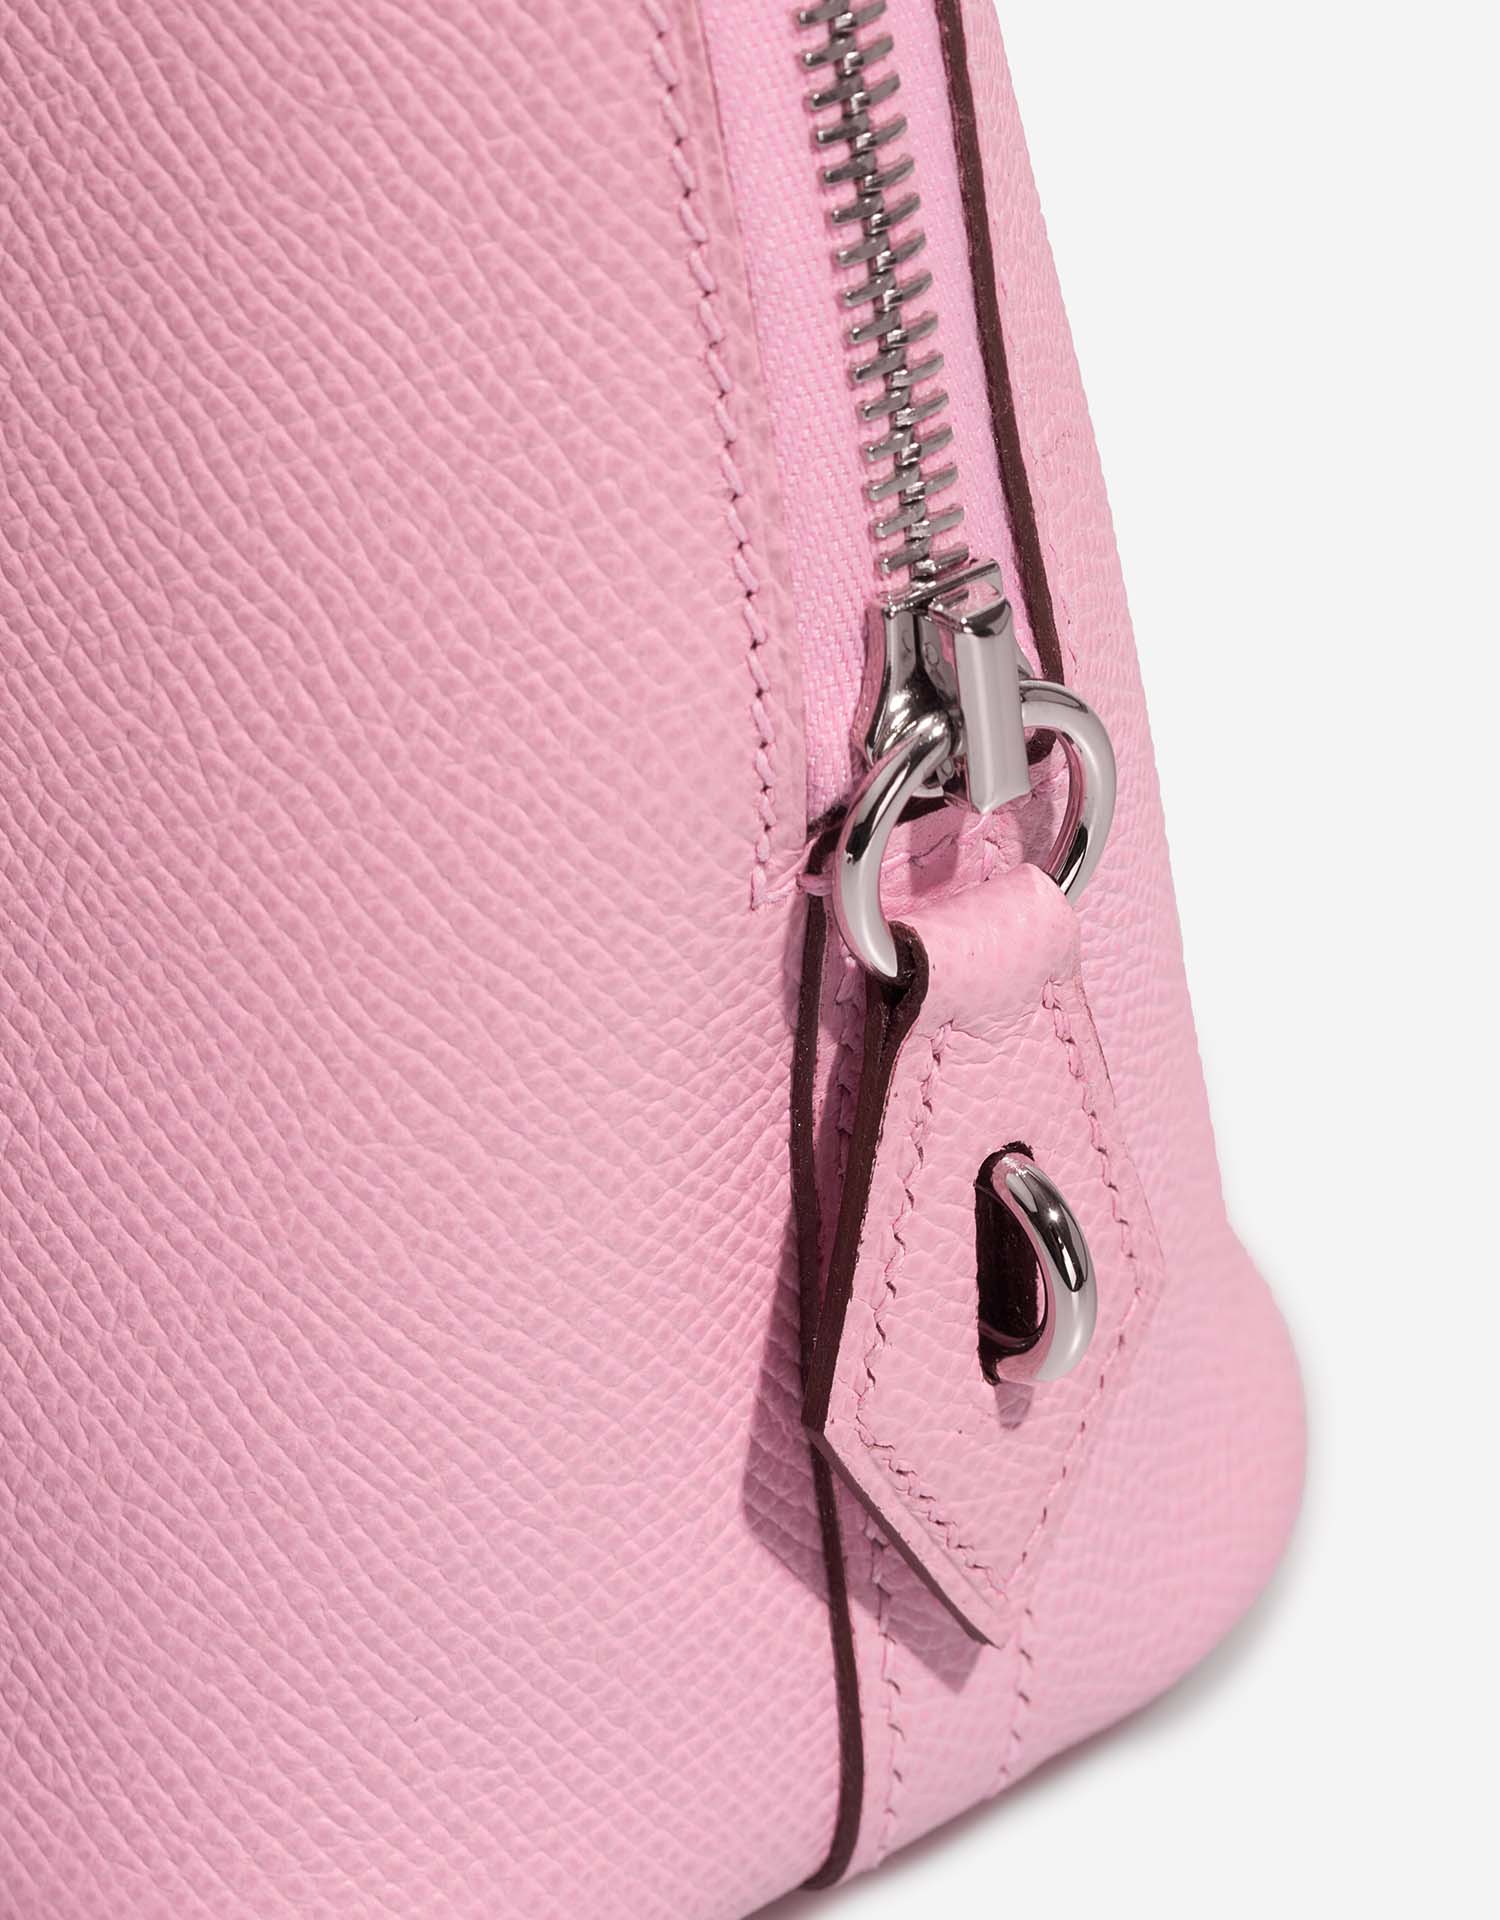 Hermès Bolide 25 MauveSylvestre Verschluss-System | Verkaufen Sie Ihre Designer-Tasche auf Saclab.com